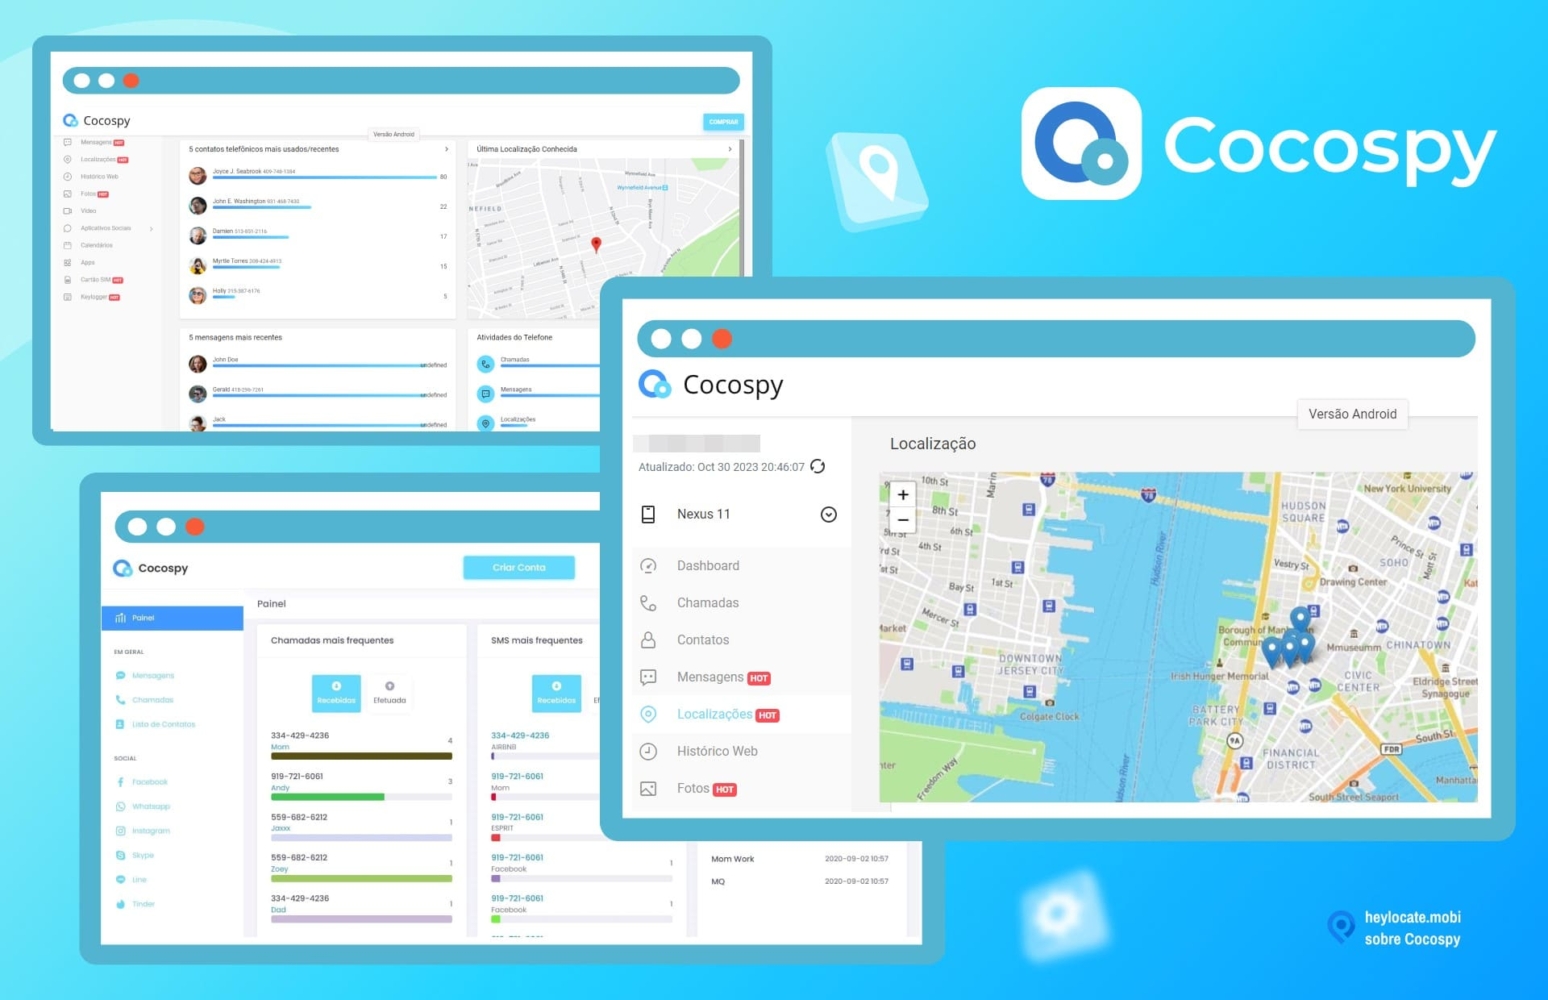 Uma colagem que mostra várias capturas de tela da interface do aplicativo Cocospy. As imagens incluem diferentes painéis, como um painel de controle, um rastreador de localização com um mapa e os bate-papos mais usados do WhatsApp.